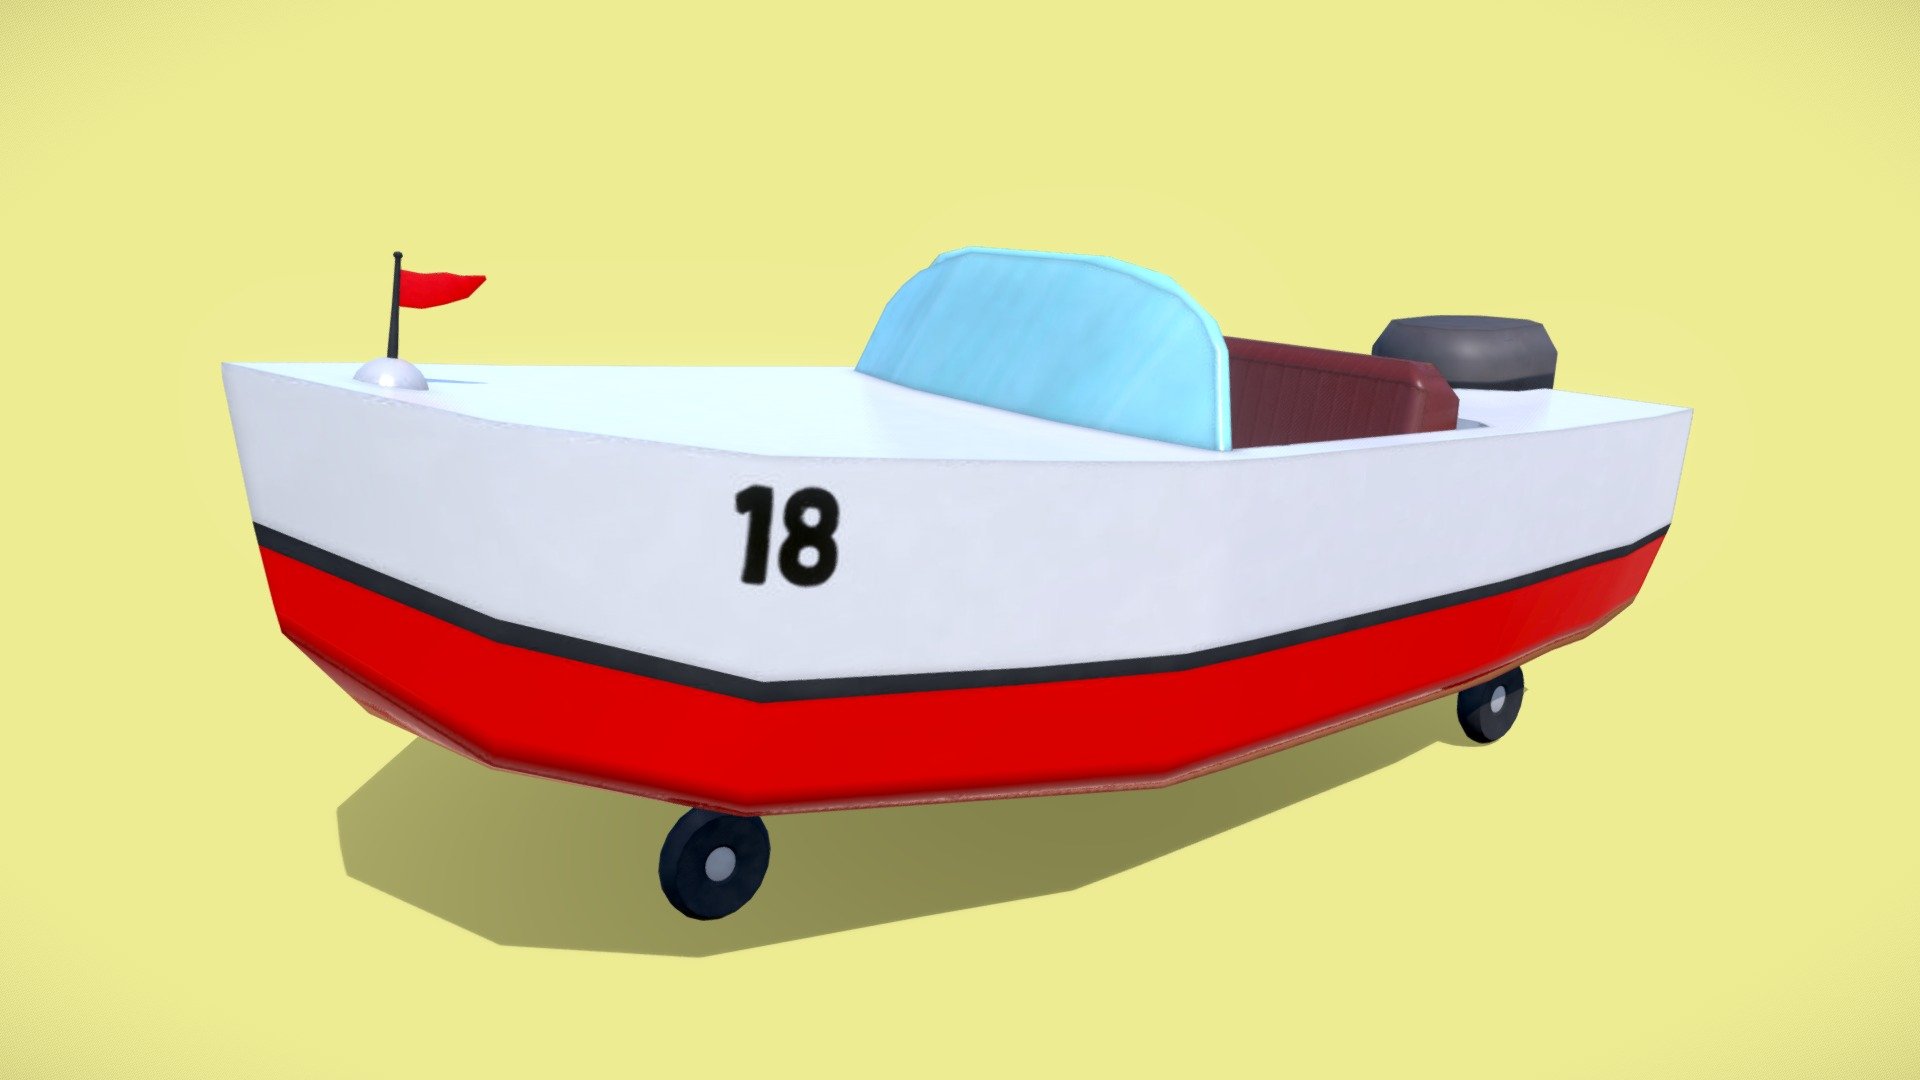 spongebob boat mobile